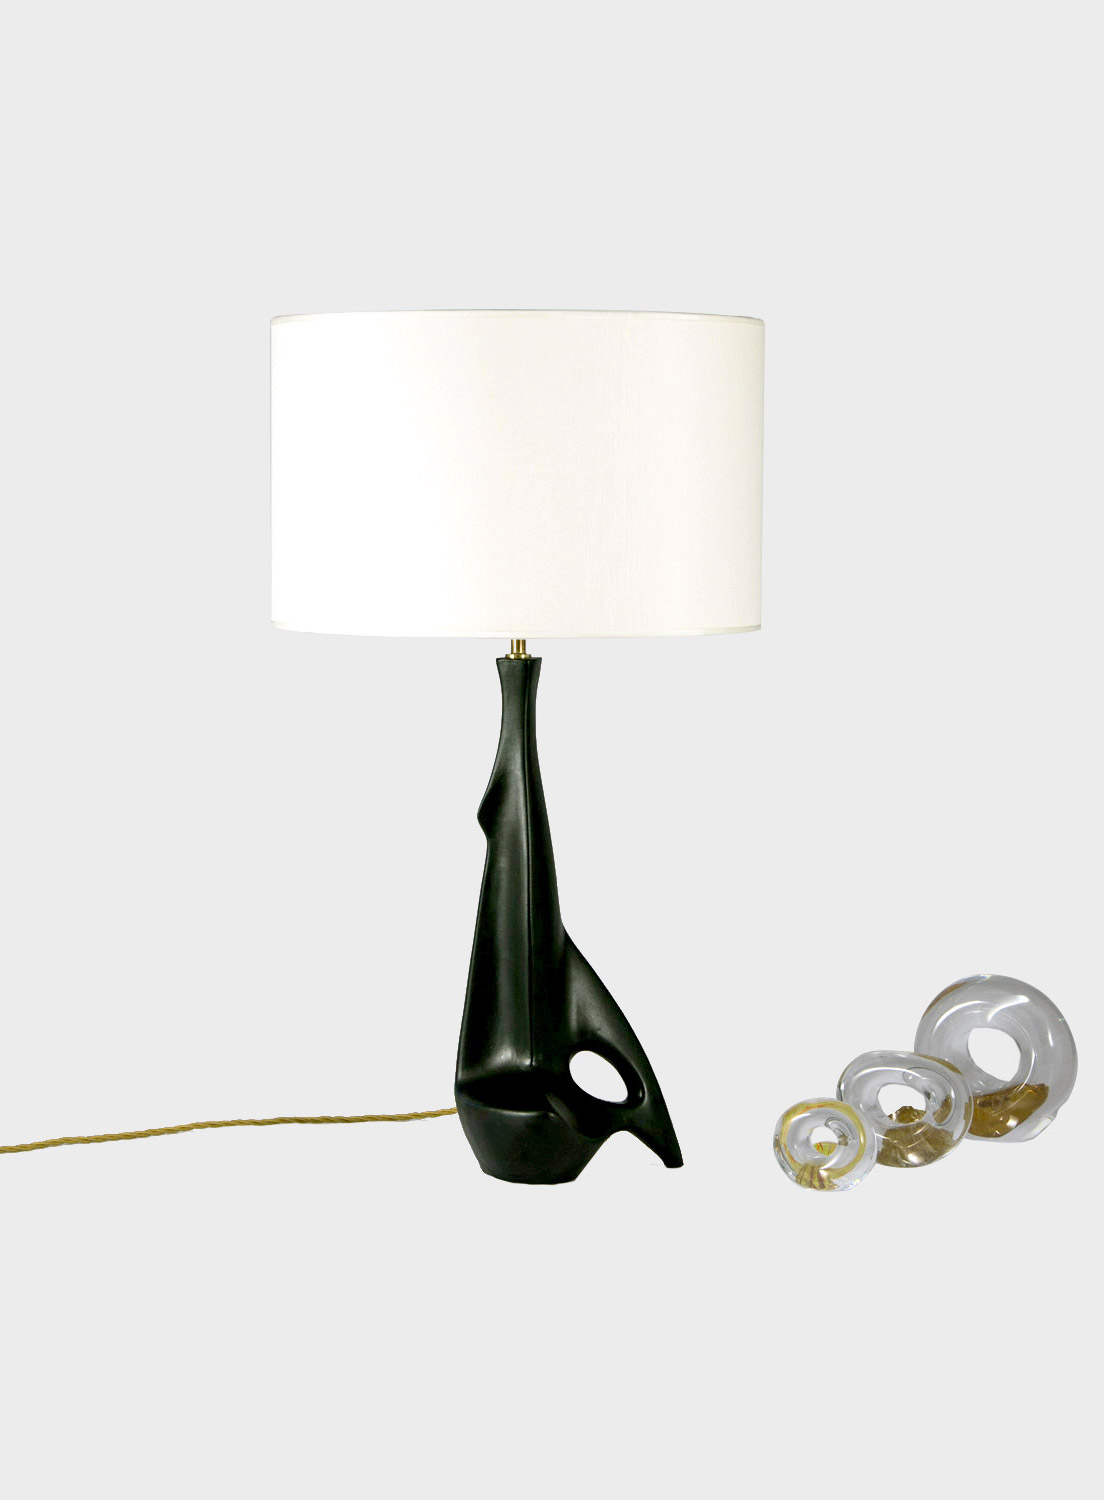 The Pulcinella Table Lamp by Silvano Pulcinella for Esperia